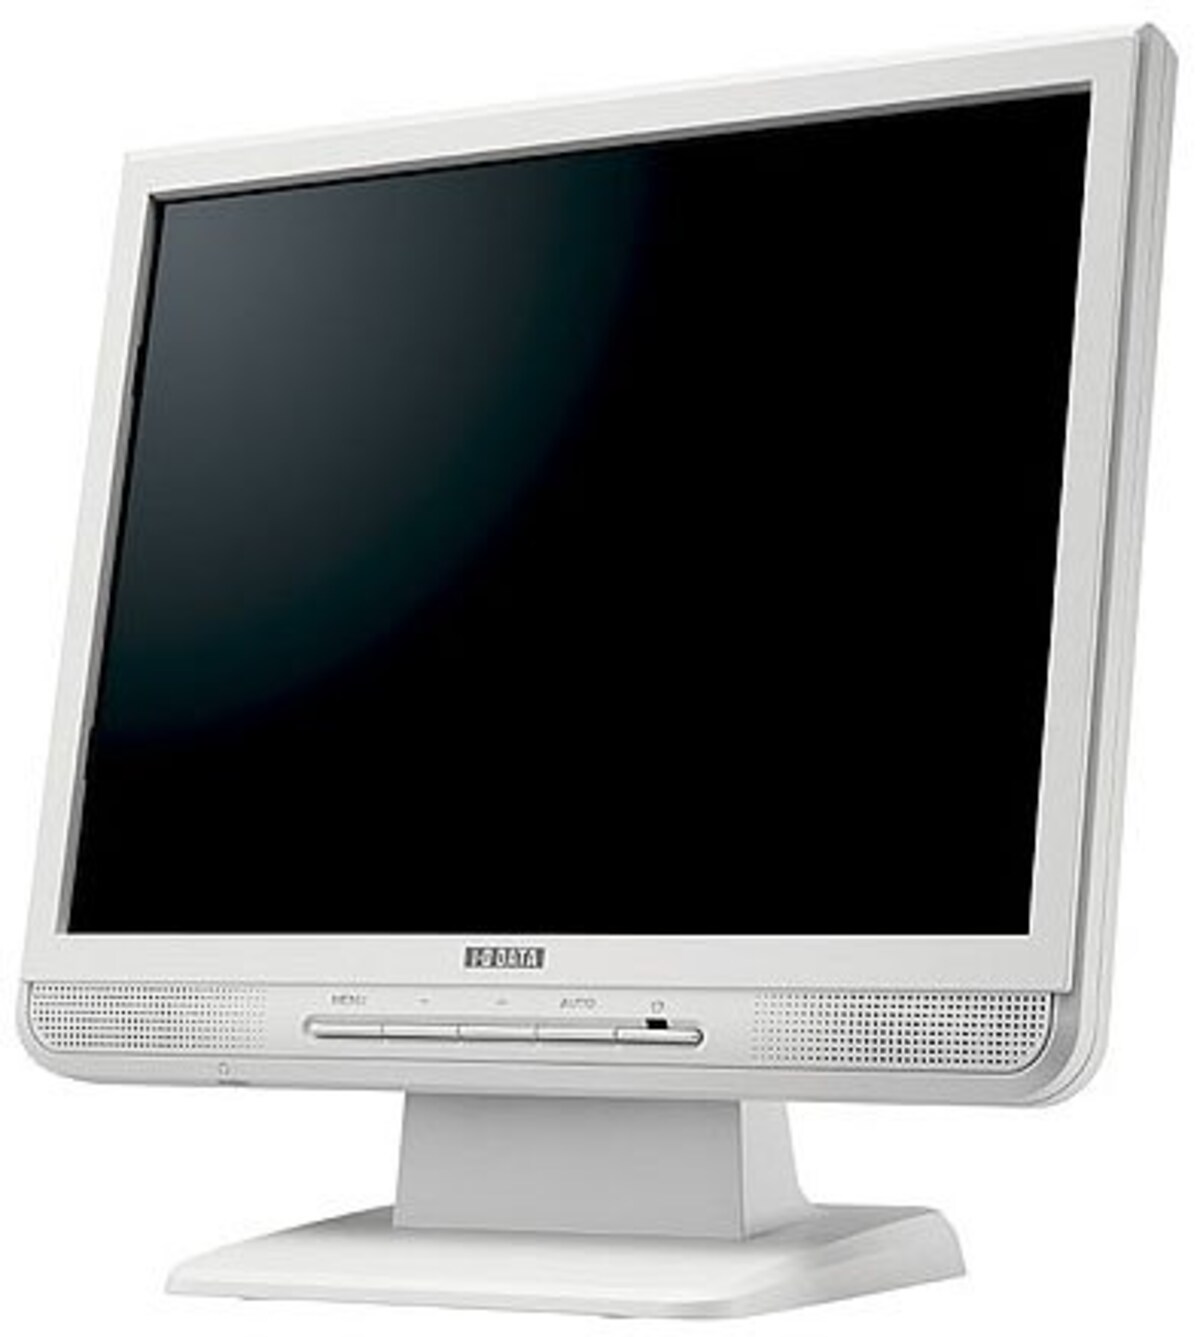 I-O DATA 15インチ液晶ディスプレイ LCD-A154GW ホワイト (XGA, アナログ, スピーカー内蔵)